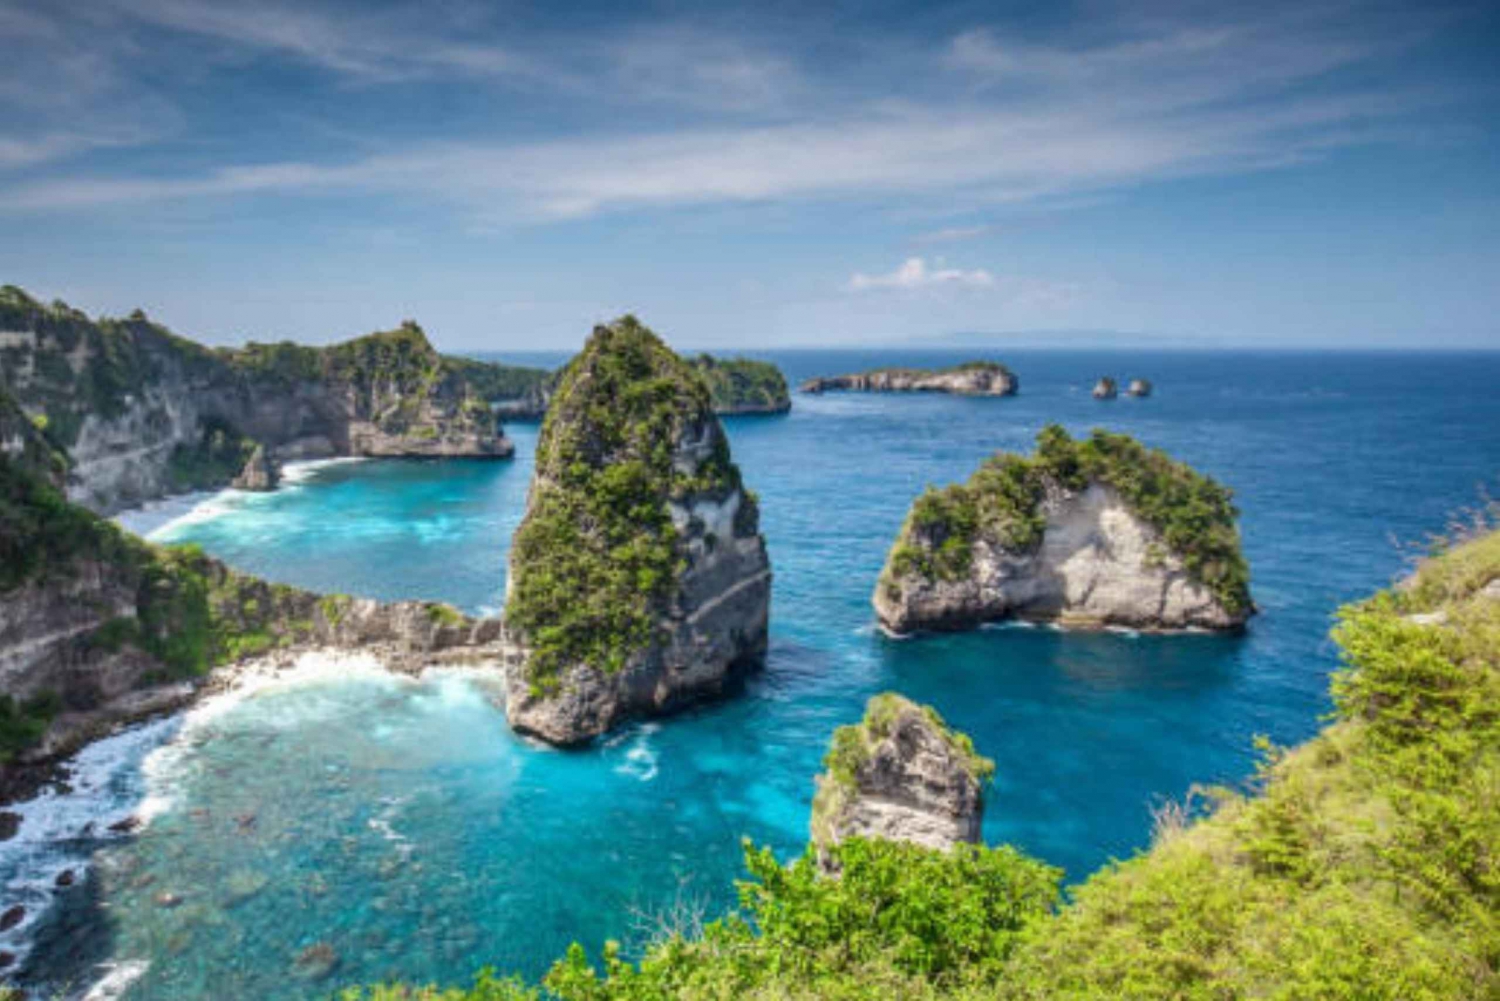 Passeio pelo Instagram e mergulho com snorkel em Nusa Penida saindo de Bali